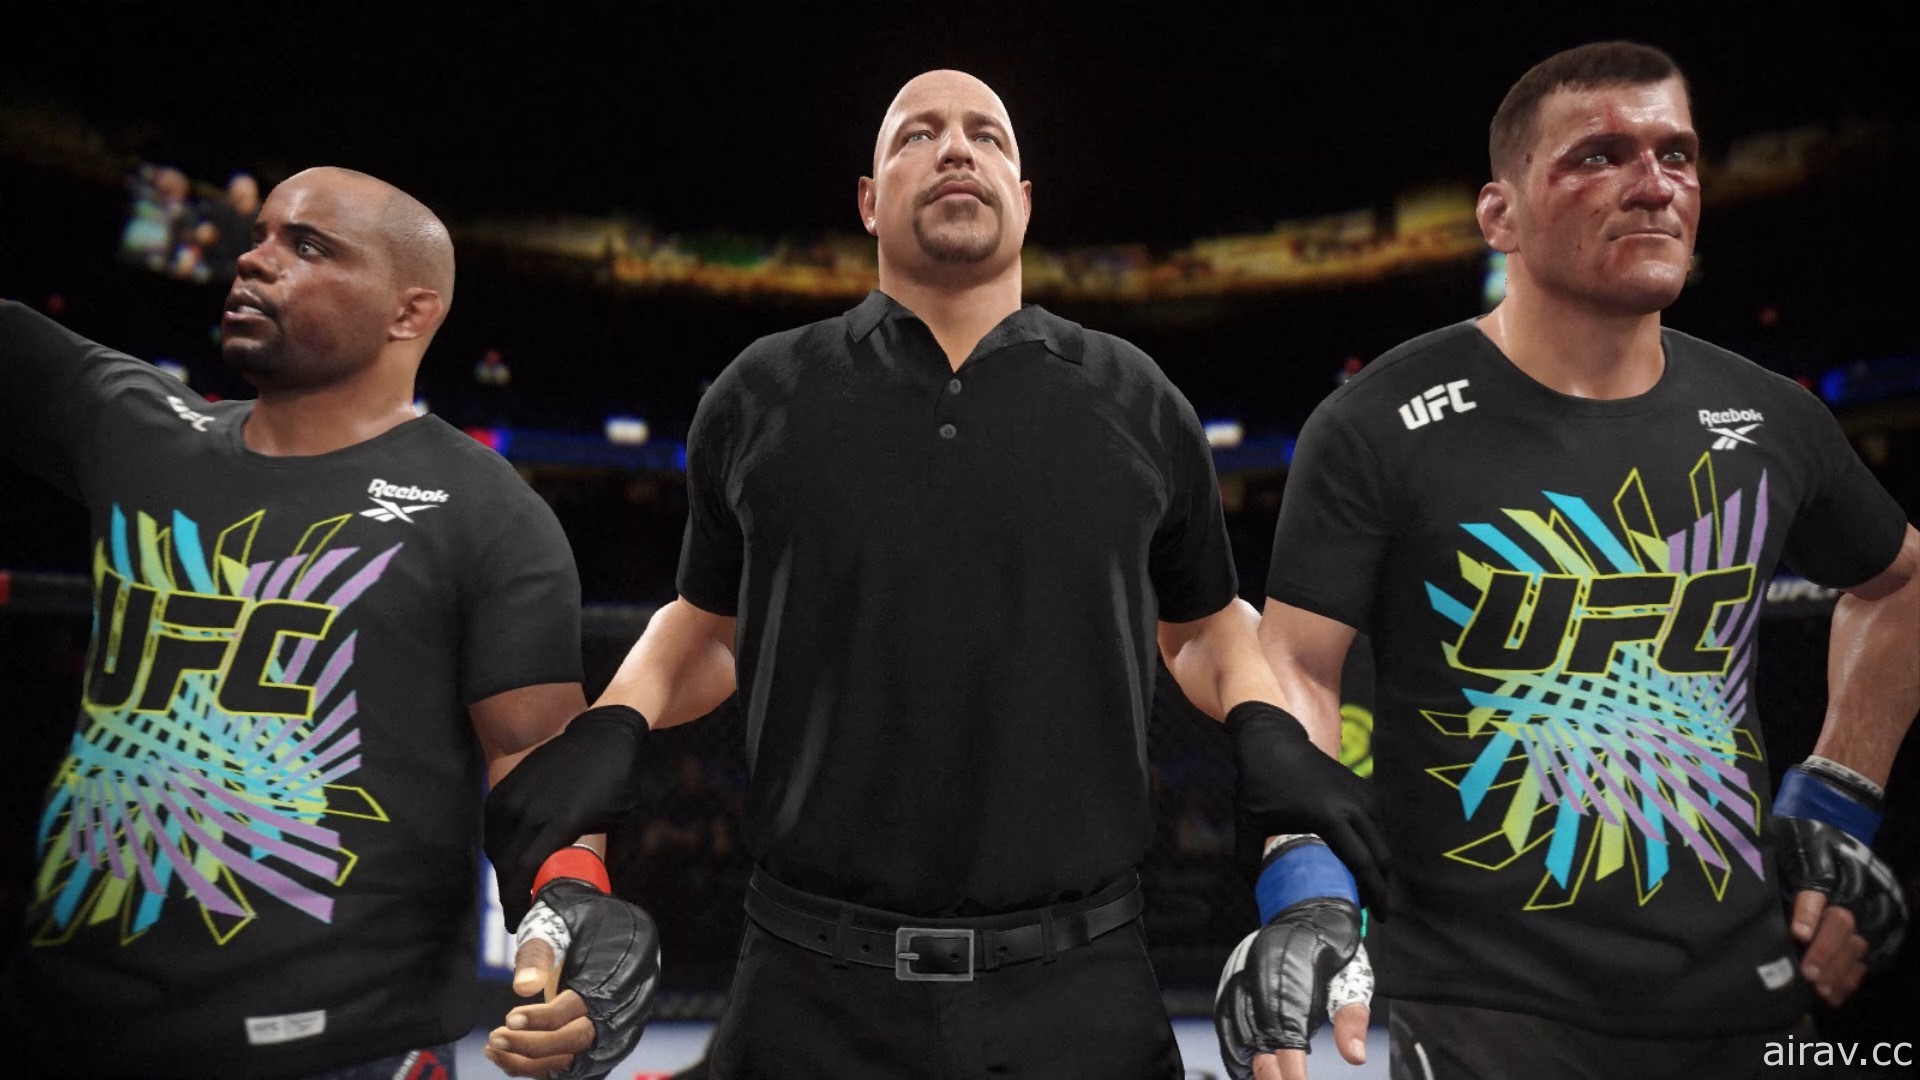 【試玩】《EA SPORTS UFC 4》強調真實與細膩的實感格鬥技大戰